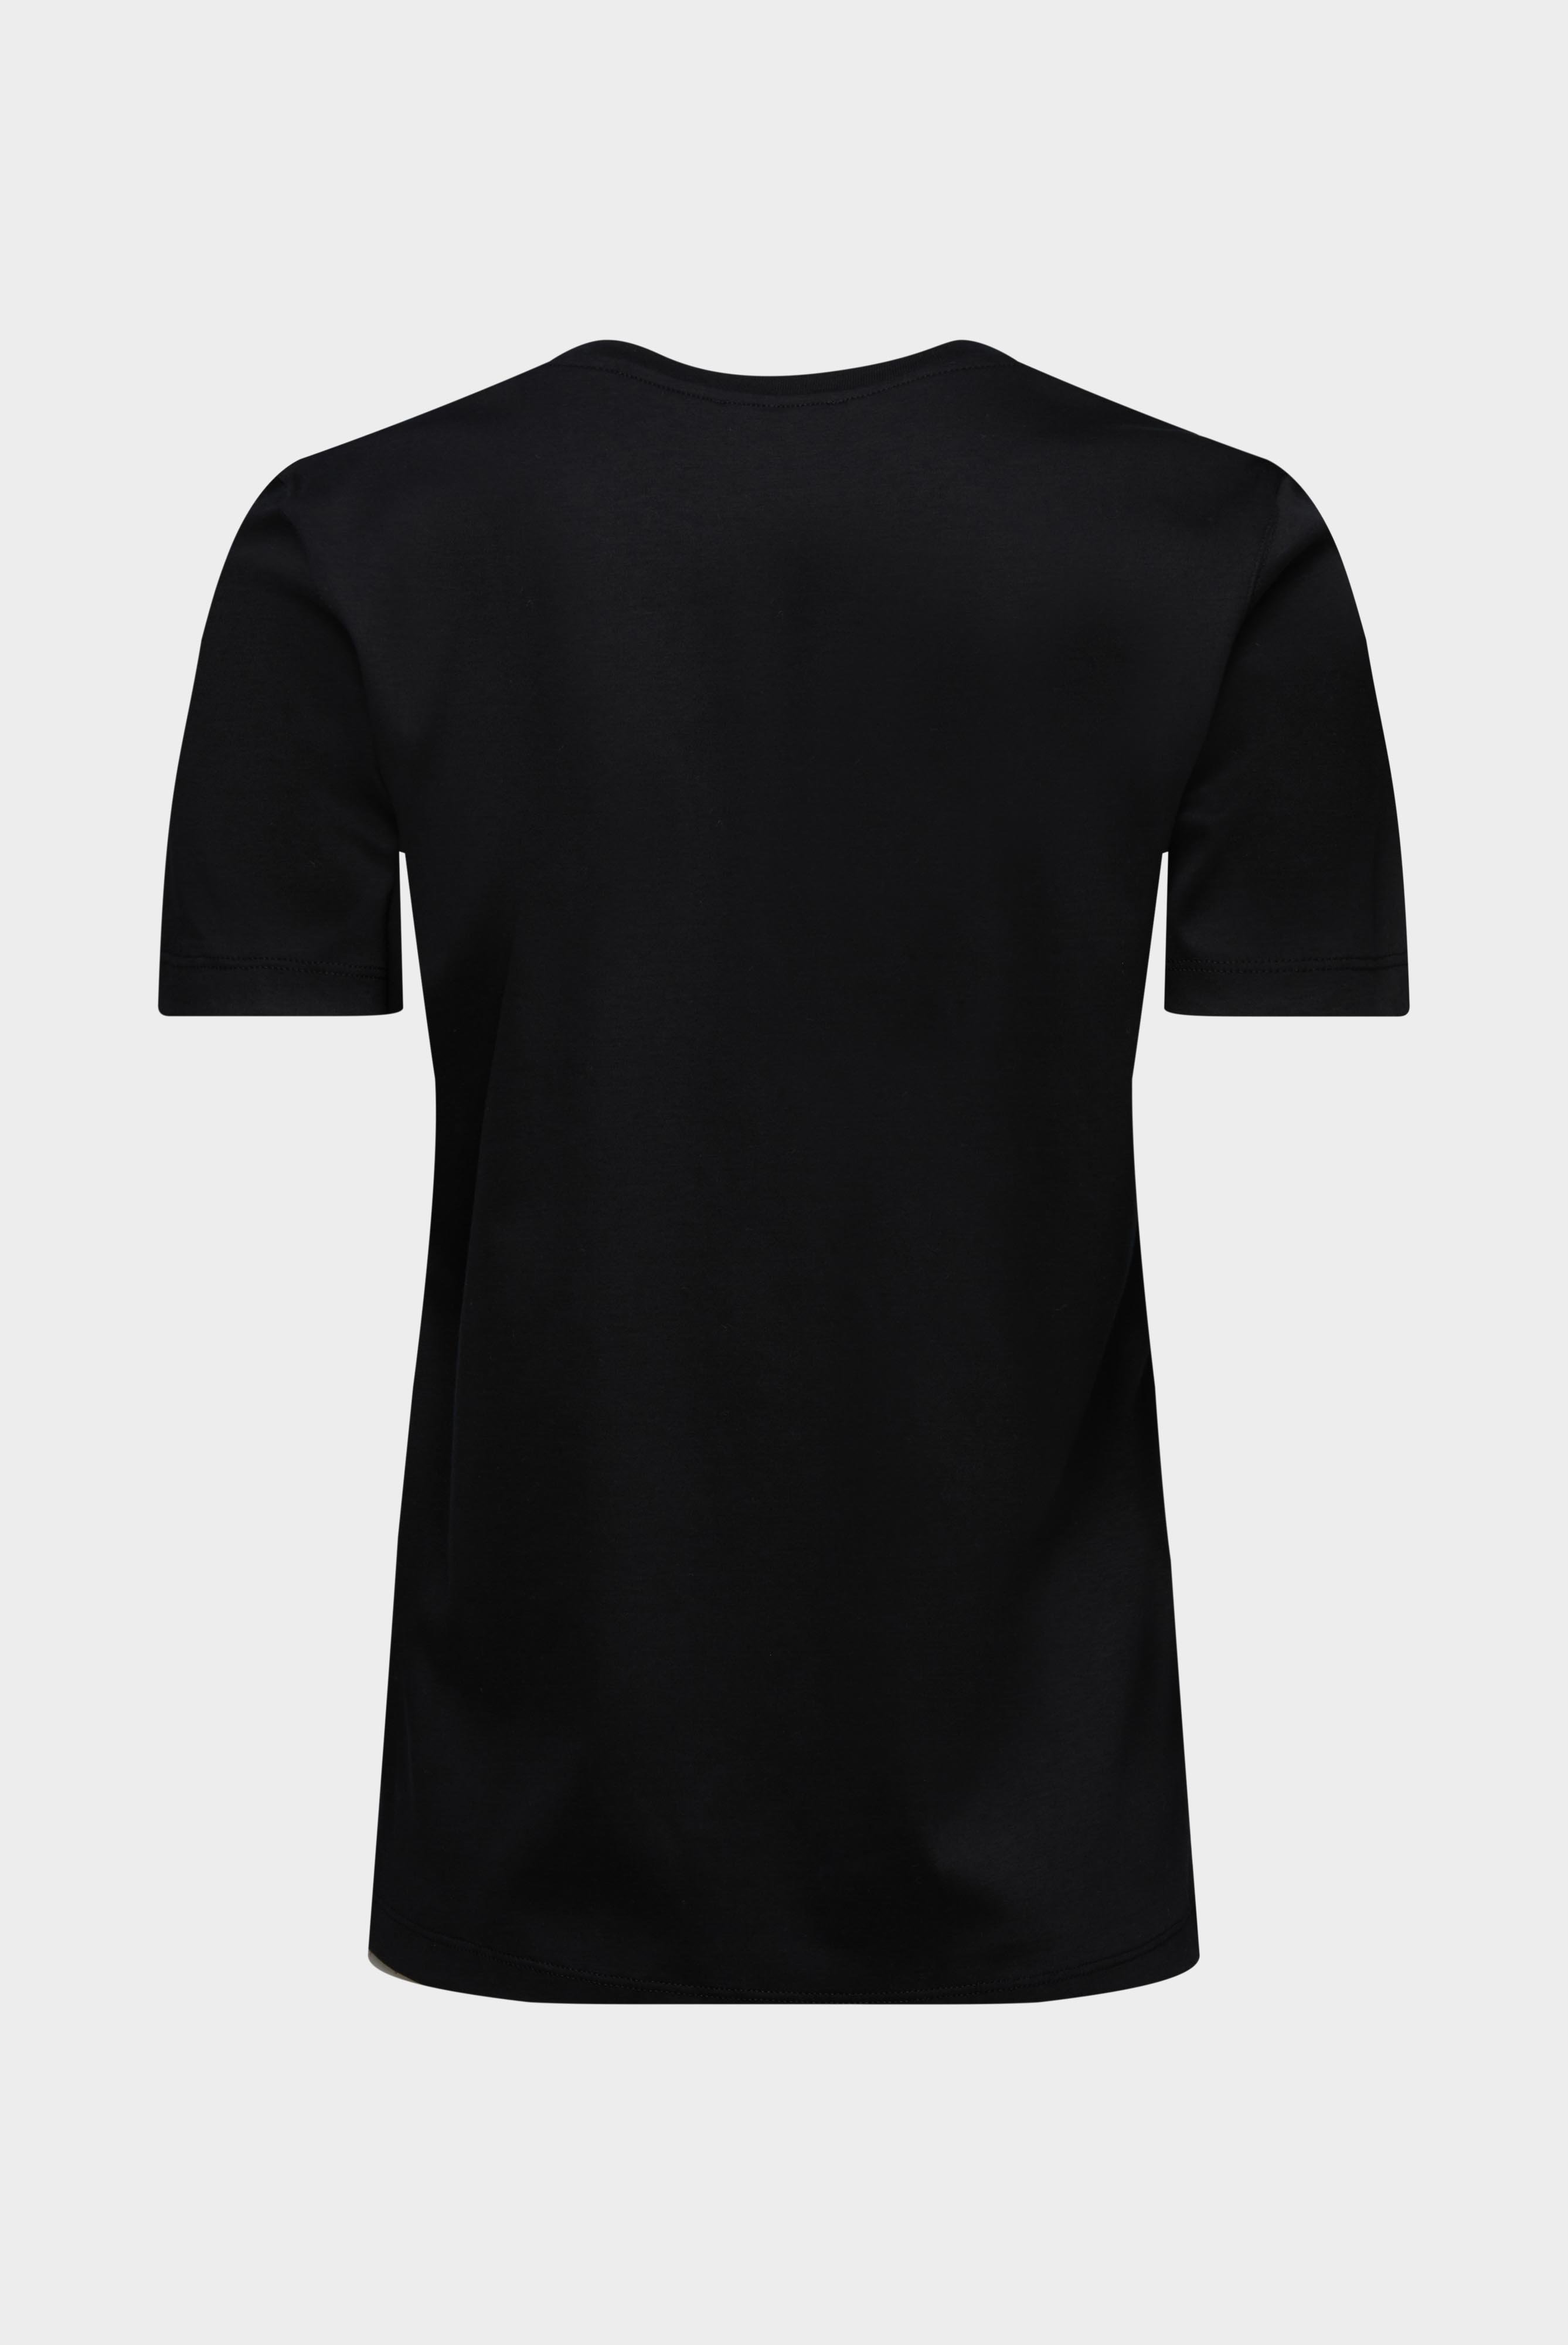 Tops & T-Shirts+Jersey T-Shirt+05.6384.18.180031.099.40